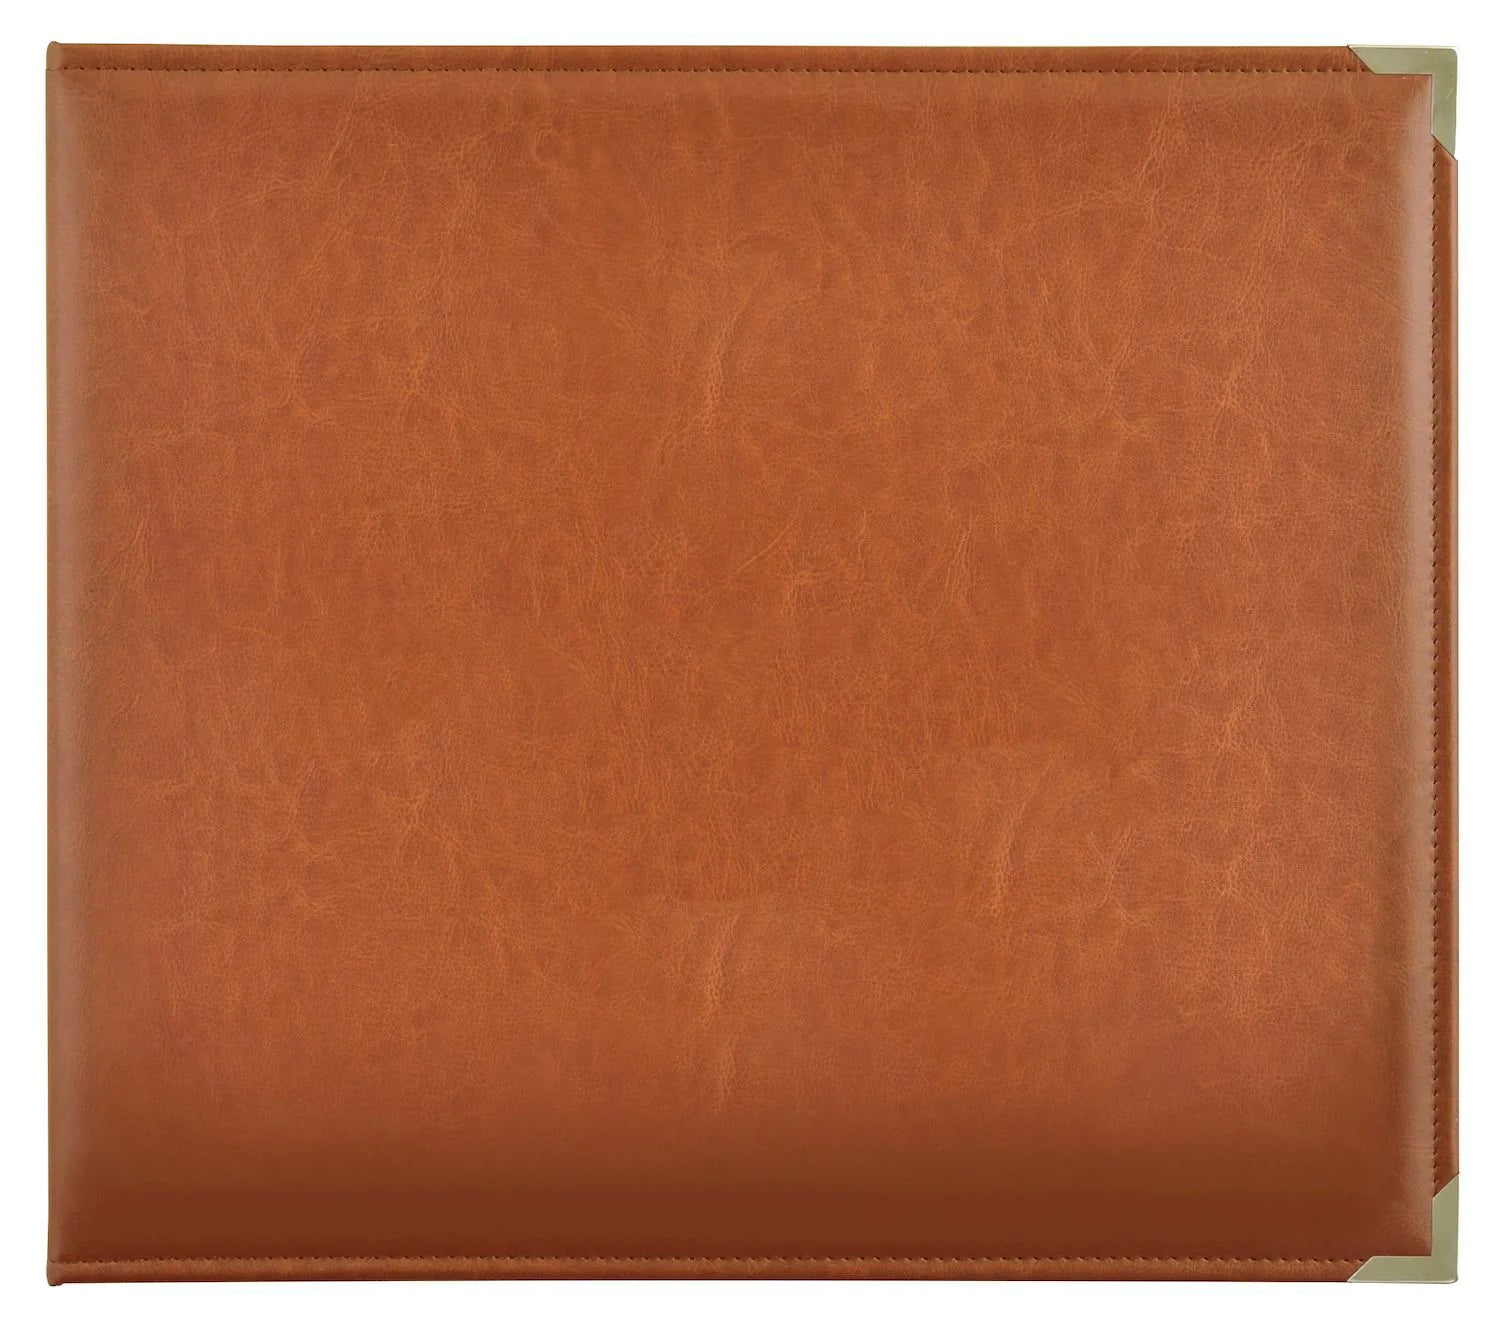 Kaisercraft PU LEATHER TAN 12”X12” D-Ring Scrapbook Album